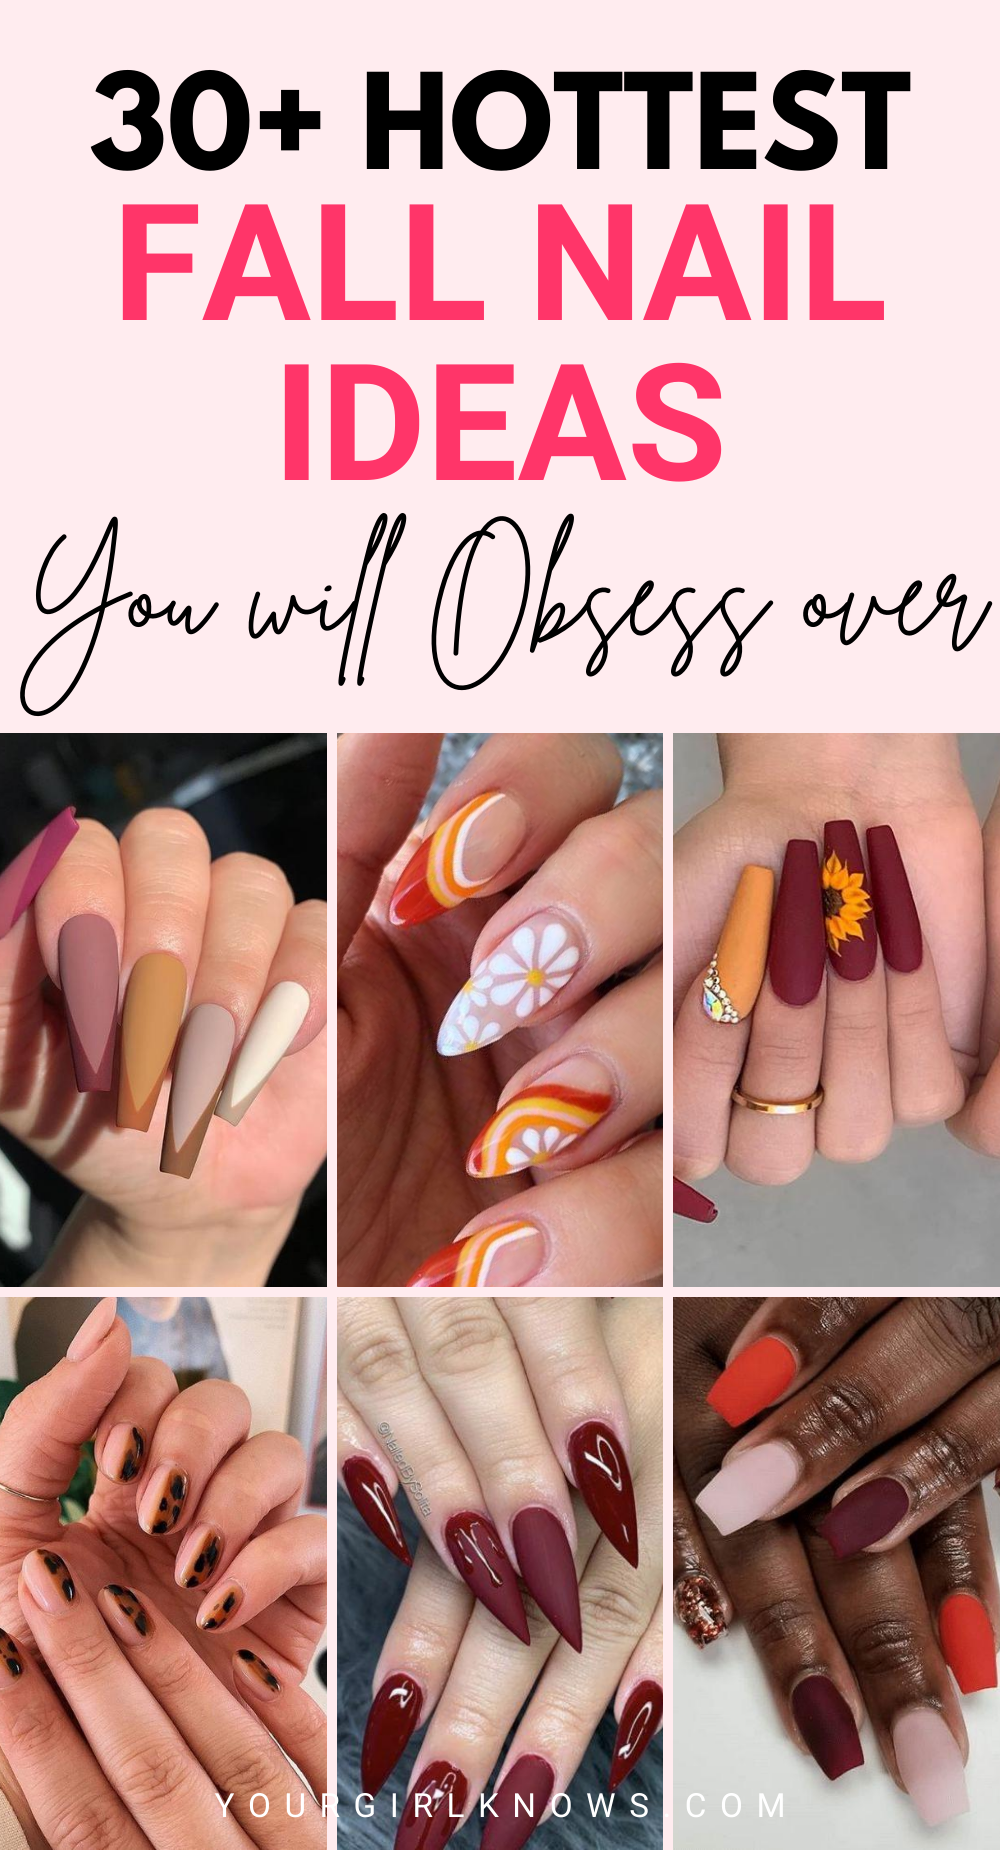 17 fall nail designs ideas